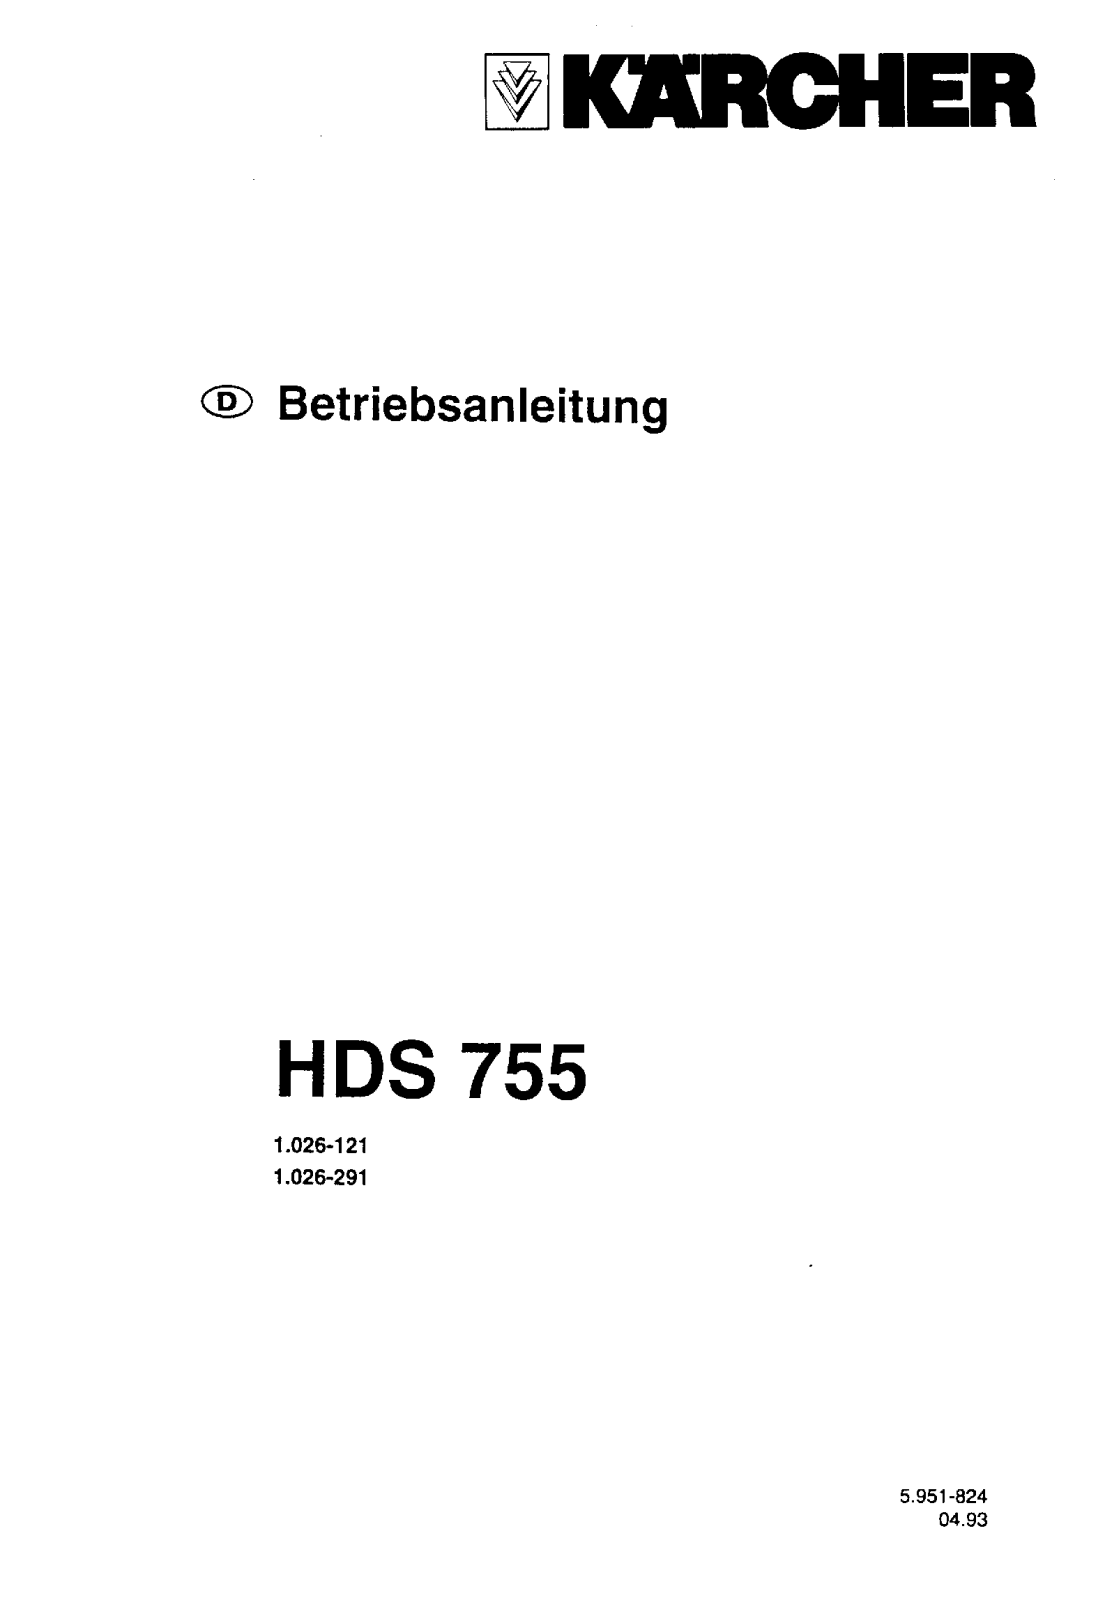 Karcher hds 755 User Manual